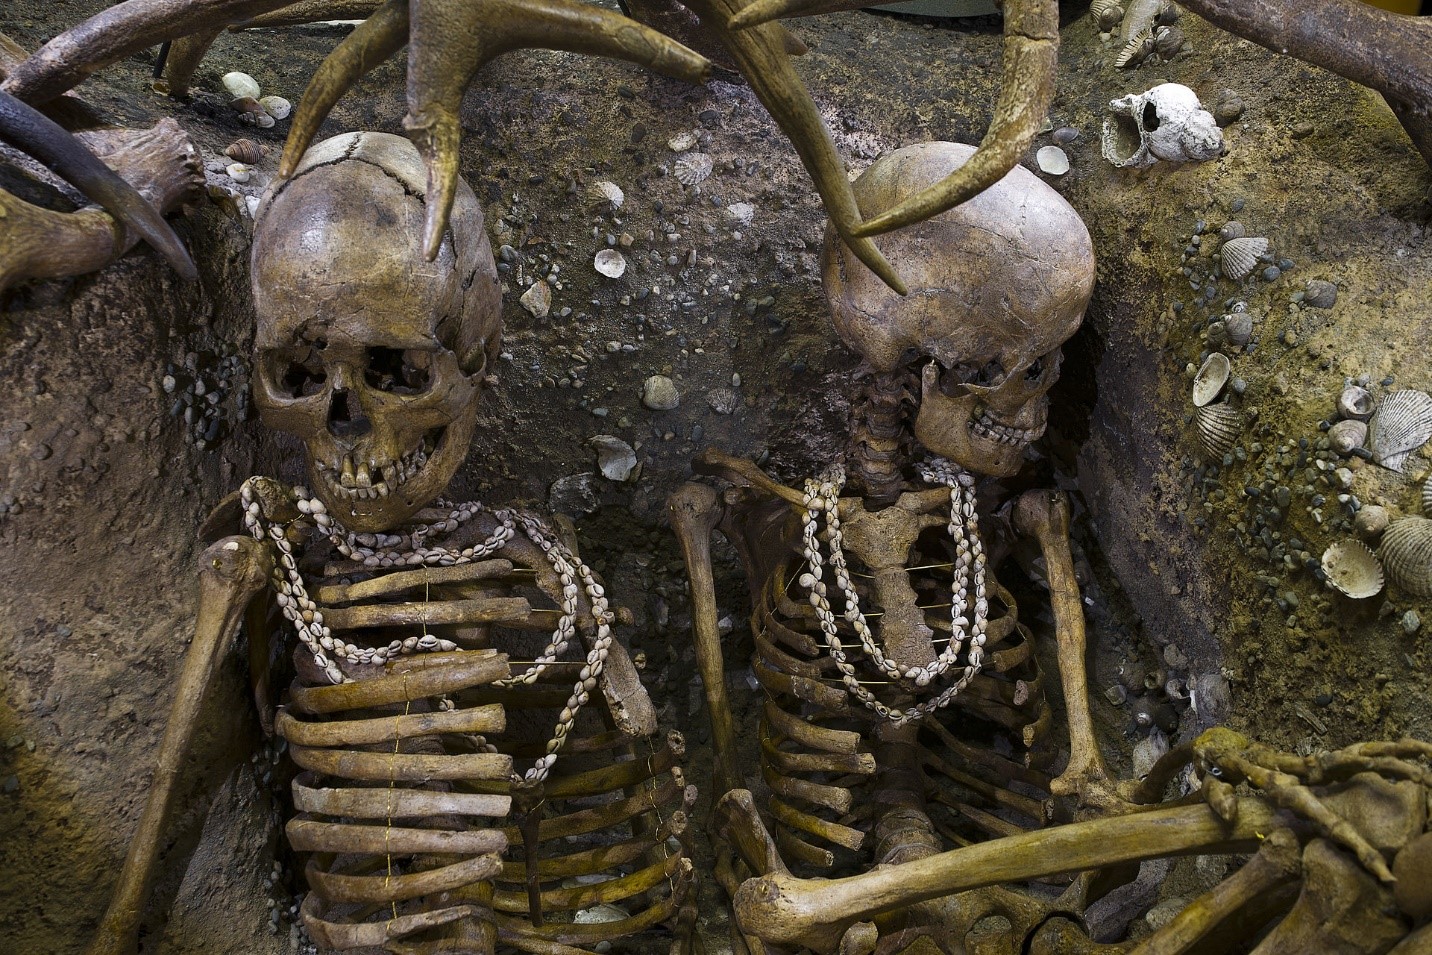 Brittony’de MÖ 5000-7000’ye tarihlenen bir taş devri mezarında, deniz kabukları ve deniz salyangozlarından yapılmış kolyeler takan kadın gömüleri bulundu. 